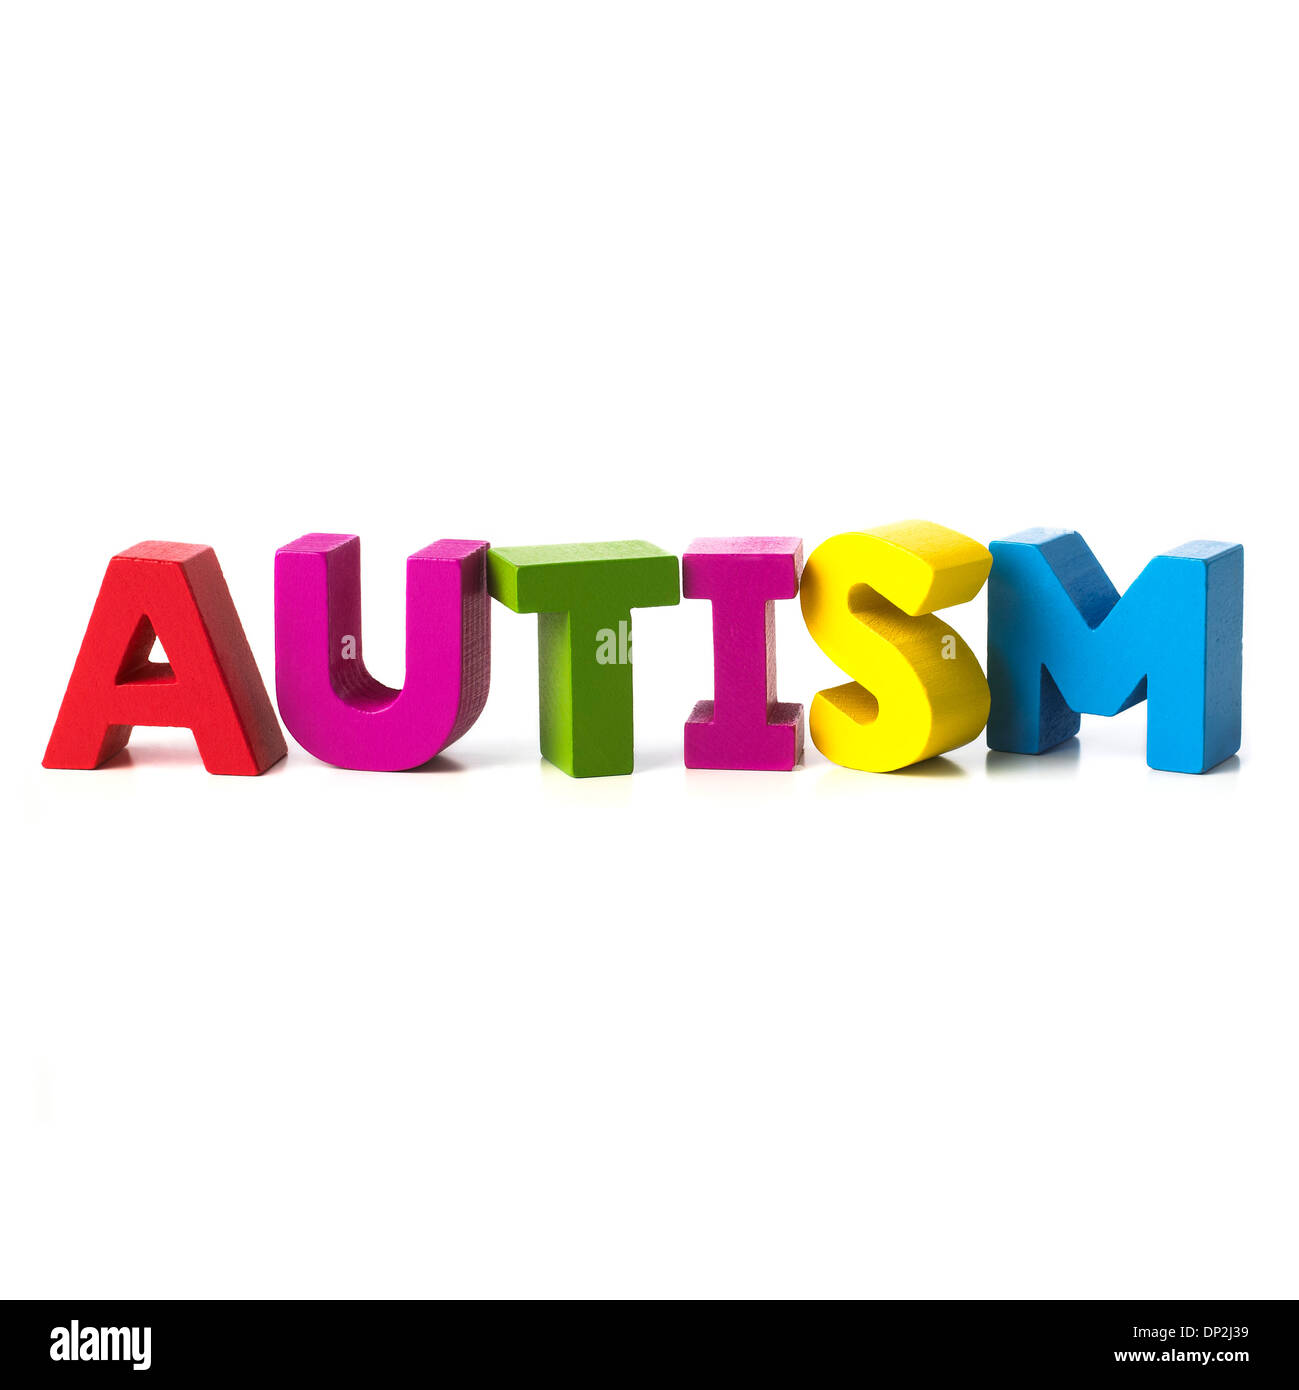 L'autisme, conceptual image Banque D'Images